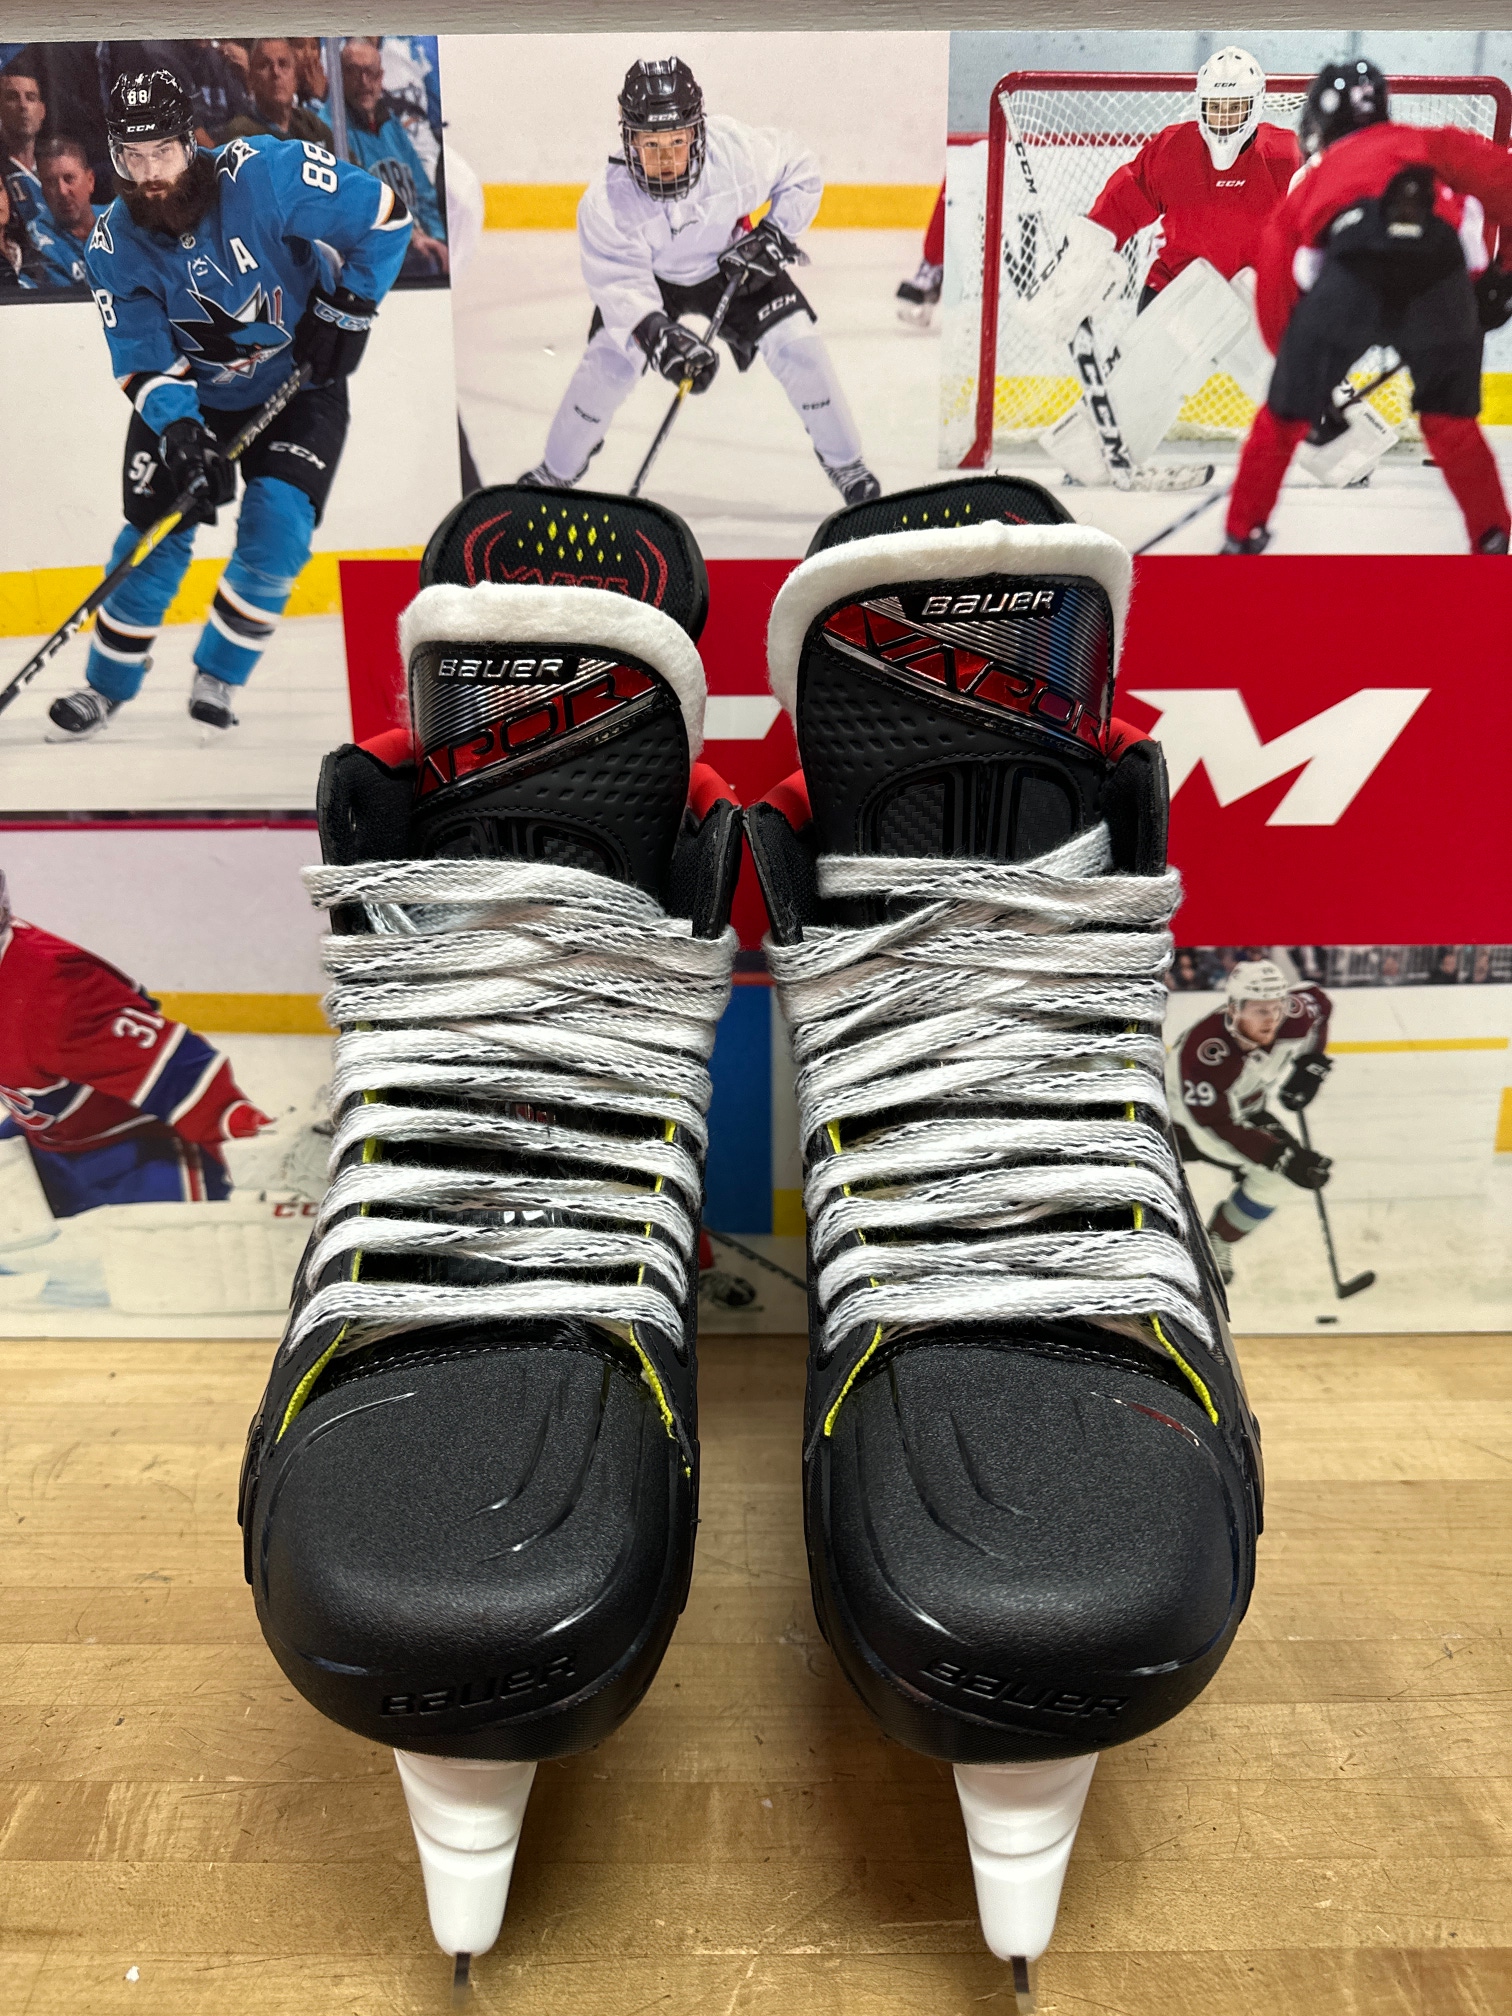 Senior New Bauer Vapor 2X Hockey Skates Size 7.5 fit 3